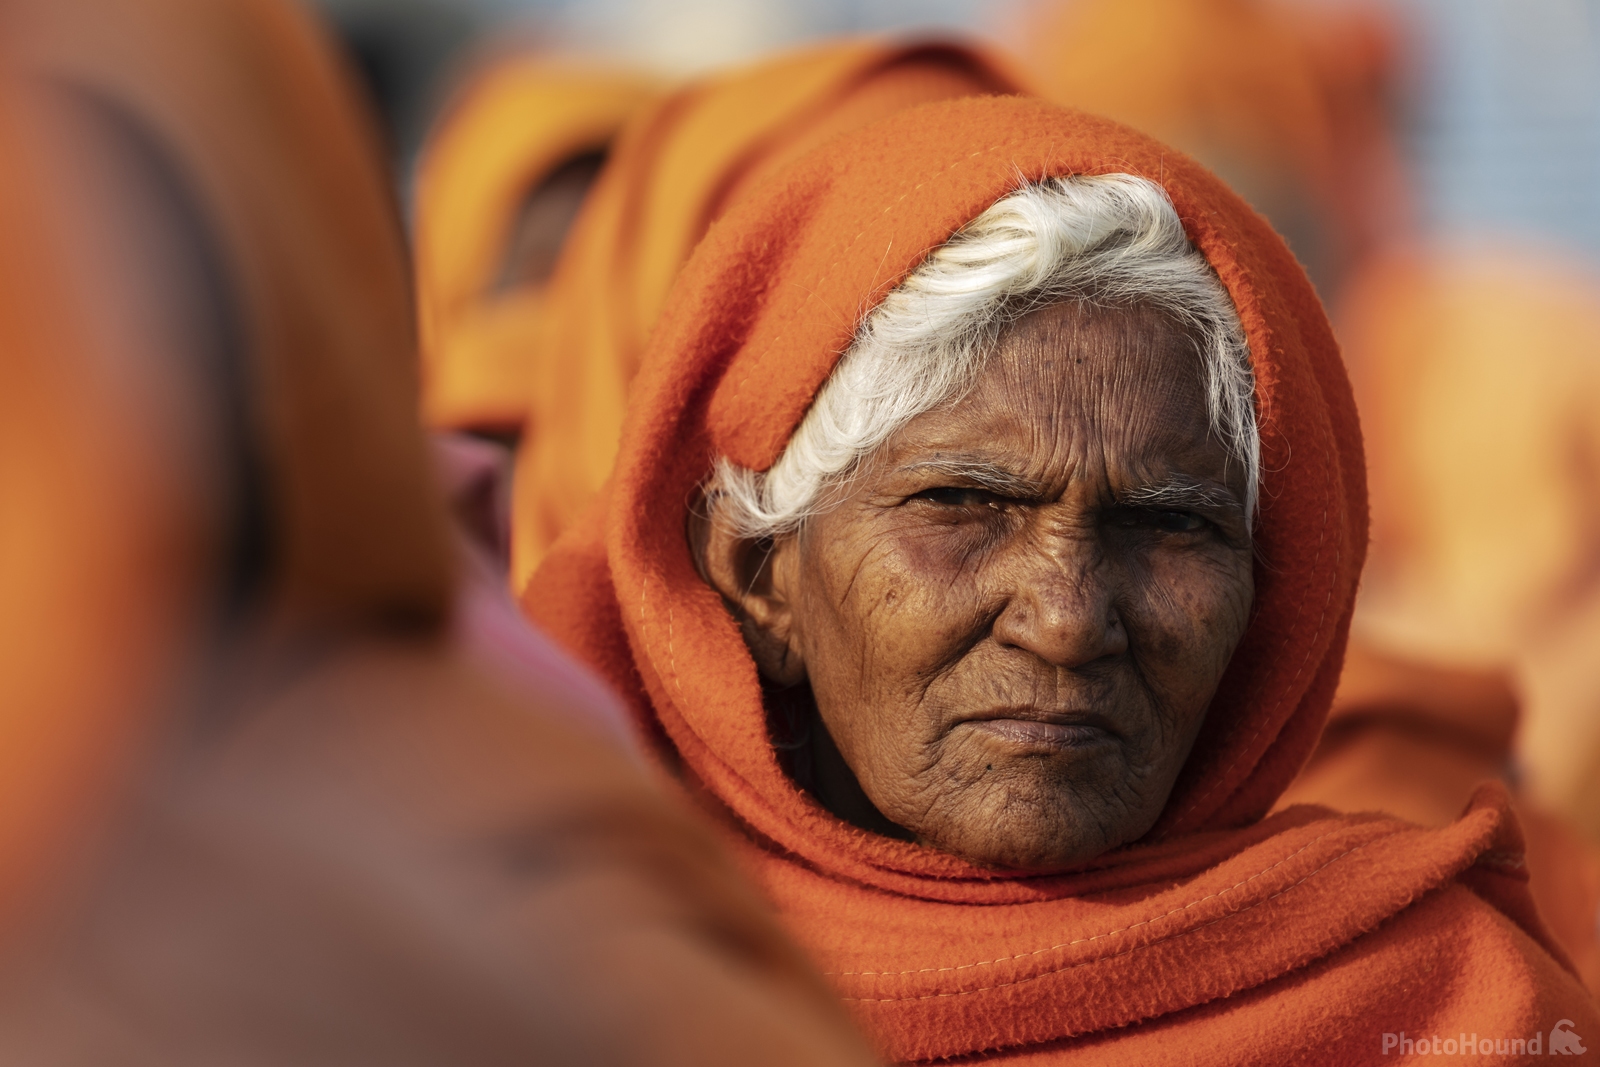 Image of Maha Kumbh Mela by Jeremy Woodhouse